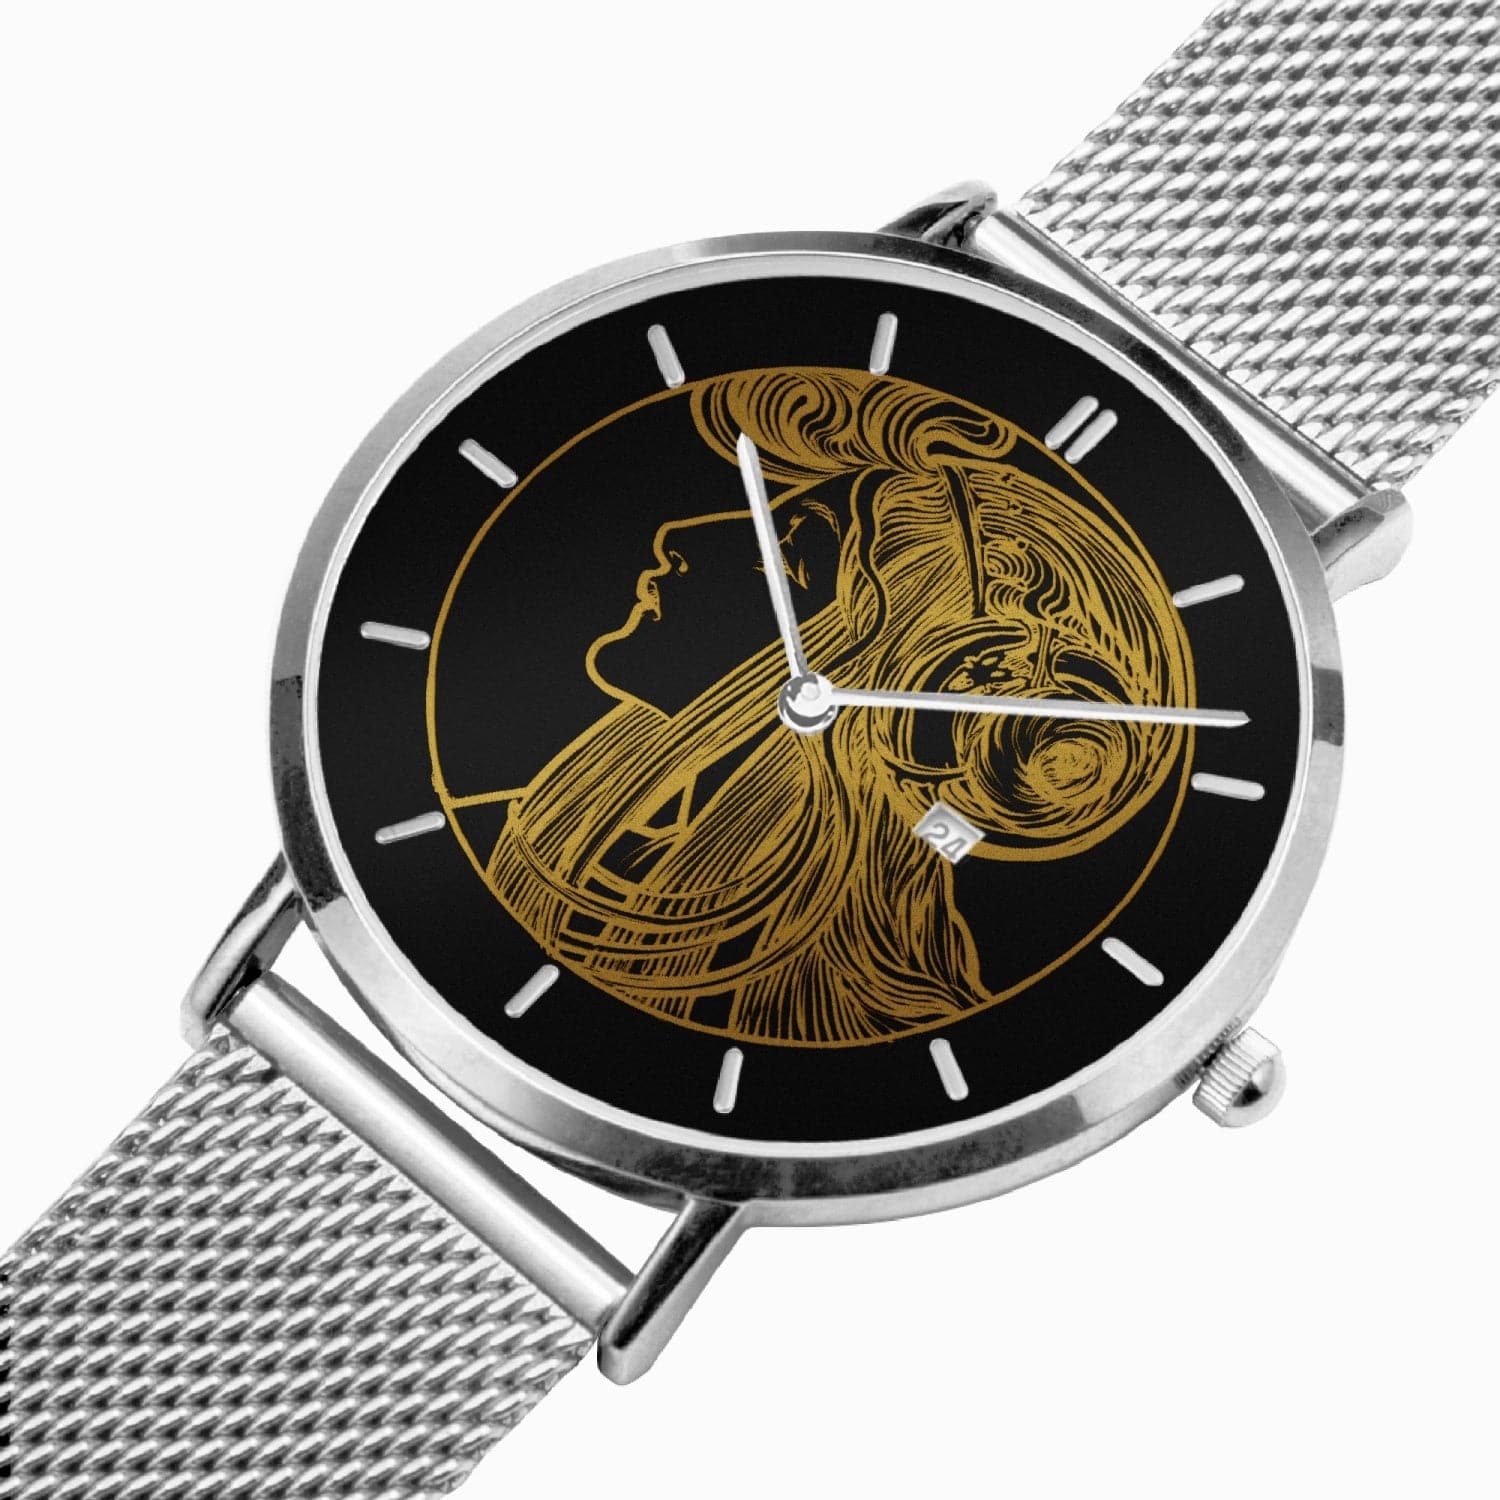 Art Nouveau Golden lady, Nouveau Watch Stainless Steel Perpetual Calendar Quartz (With Indicators), by Sensus Studio